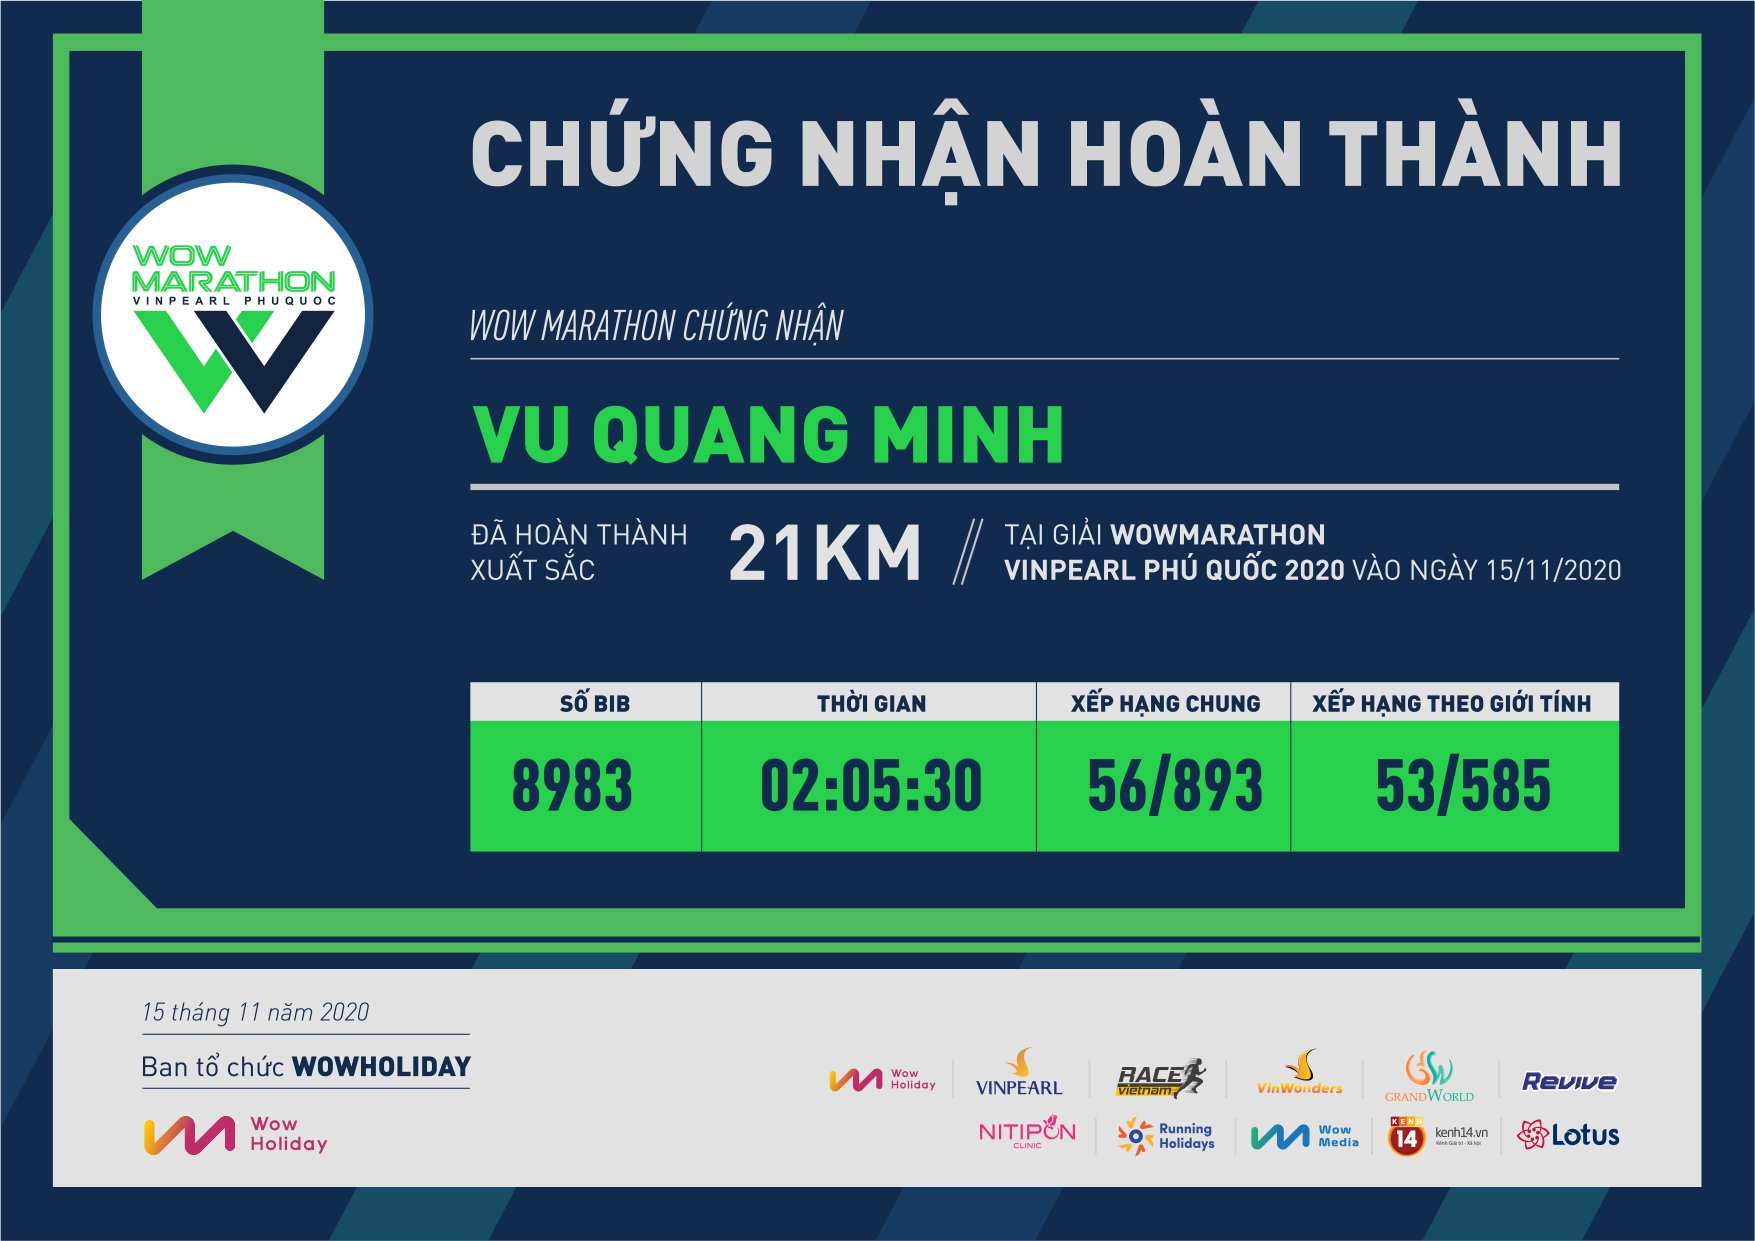 8983 - Vu Quang Minh